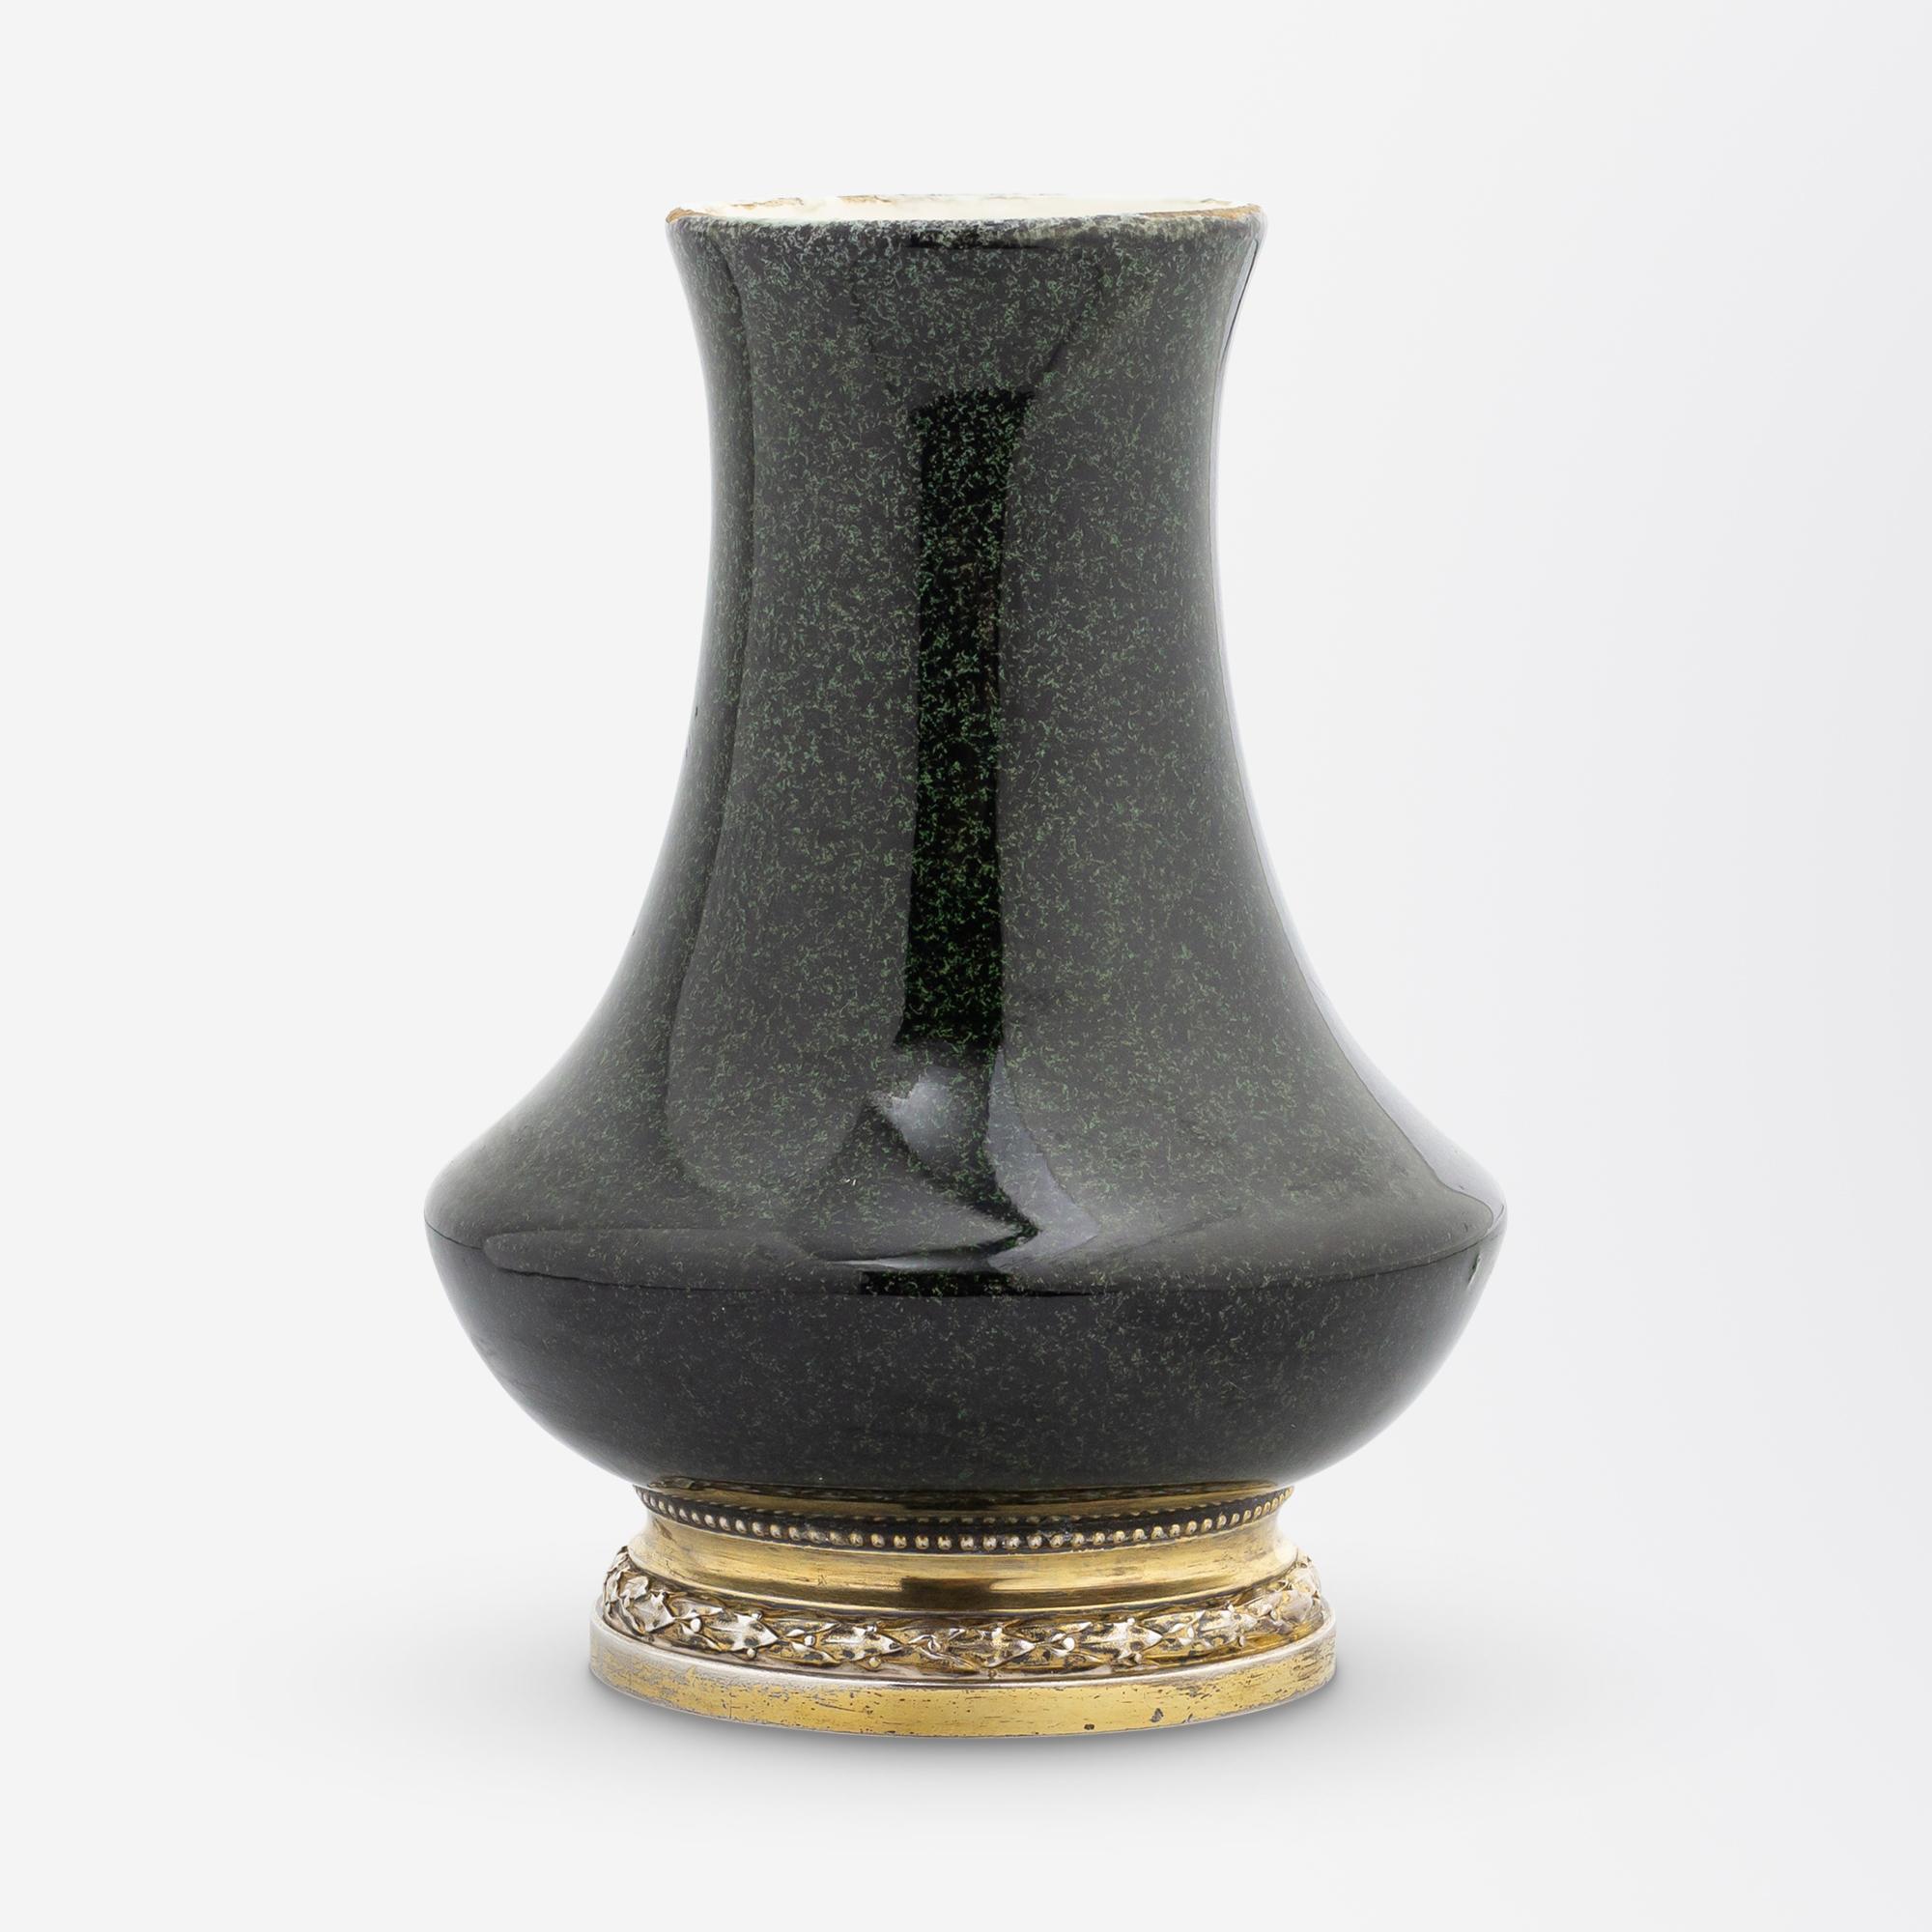 Ce magnifique vase en forme de bourgeon a été fabriqué en France par le céramiste Paul Milet (1870-1950) au cours du premier quart du XXe siècle. Ce petit vase à glaçure verte tachetée est typique du travail de Milet, qui a travaillé à Serves sur